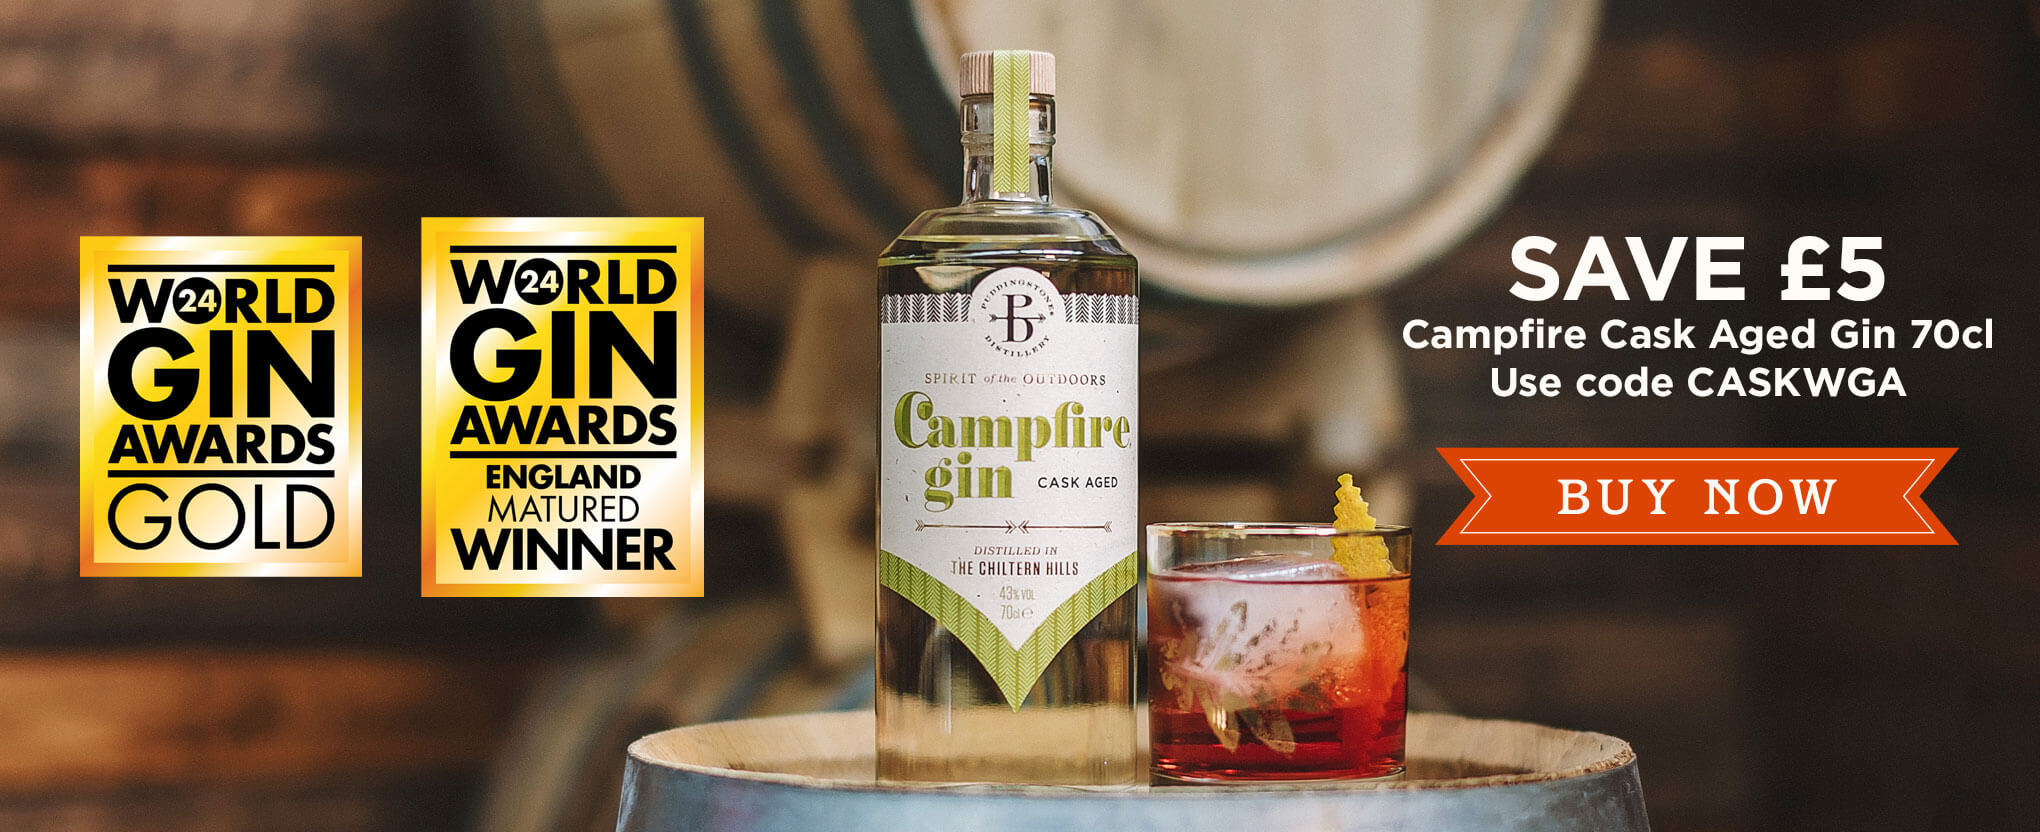 Campfire Cask Aged Gin World Gin Awards